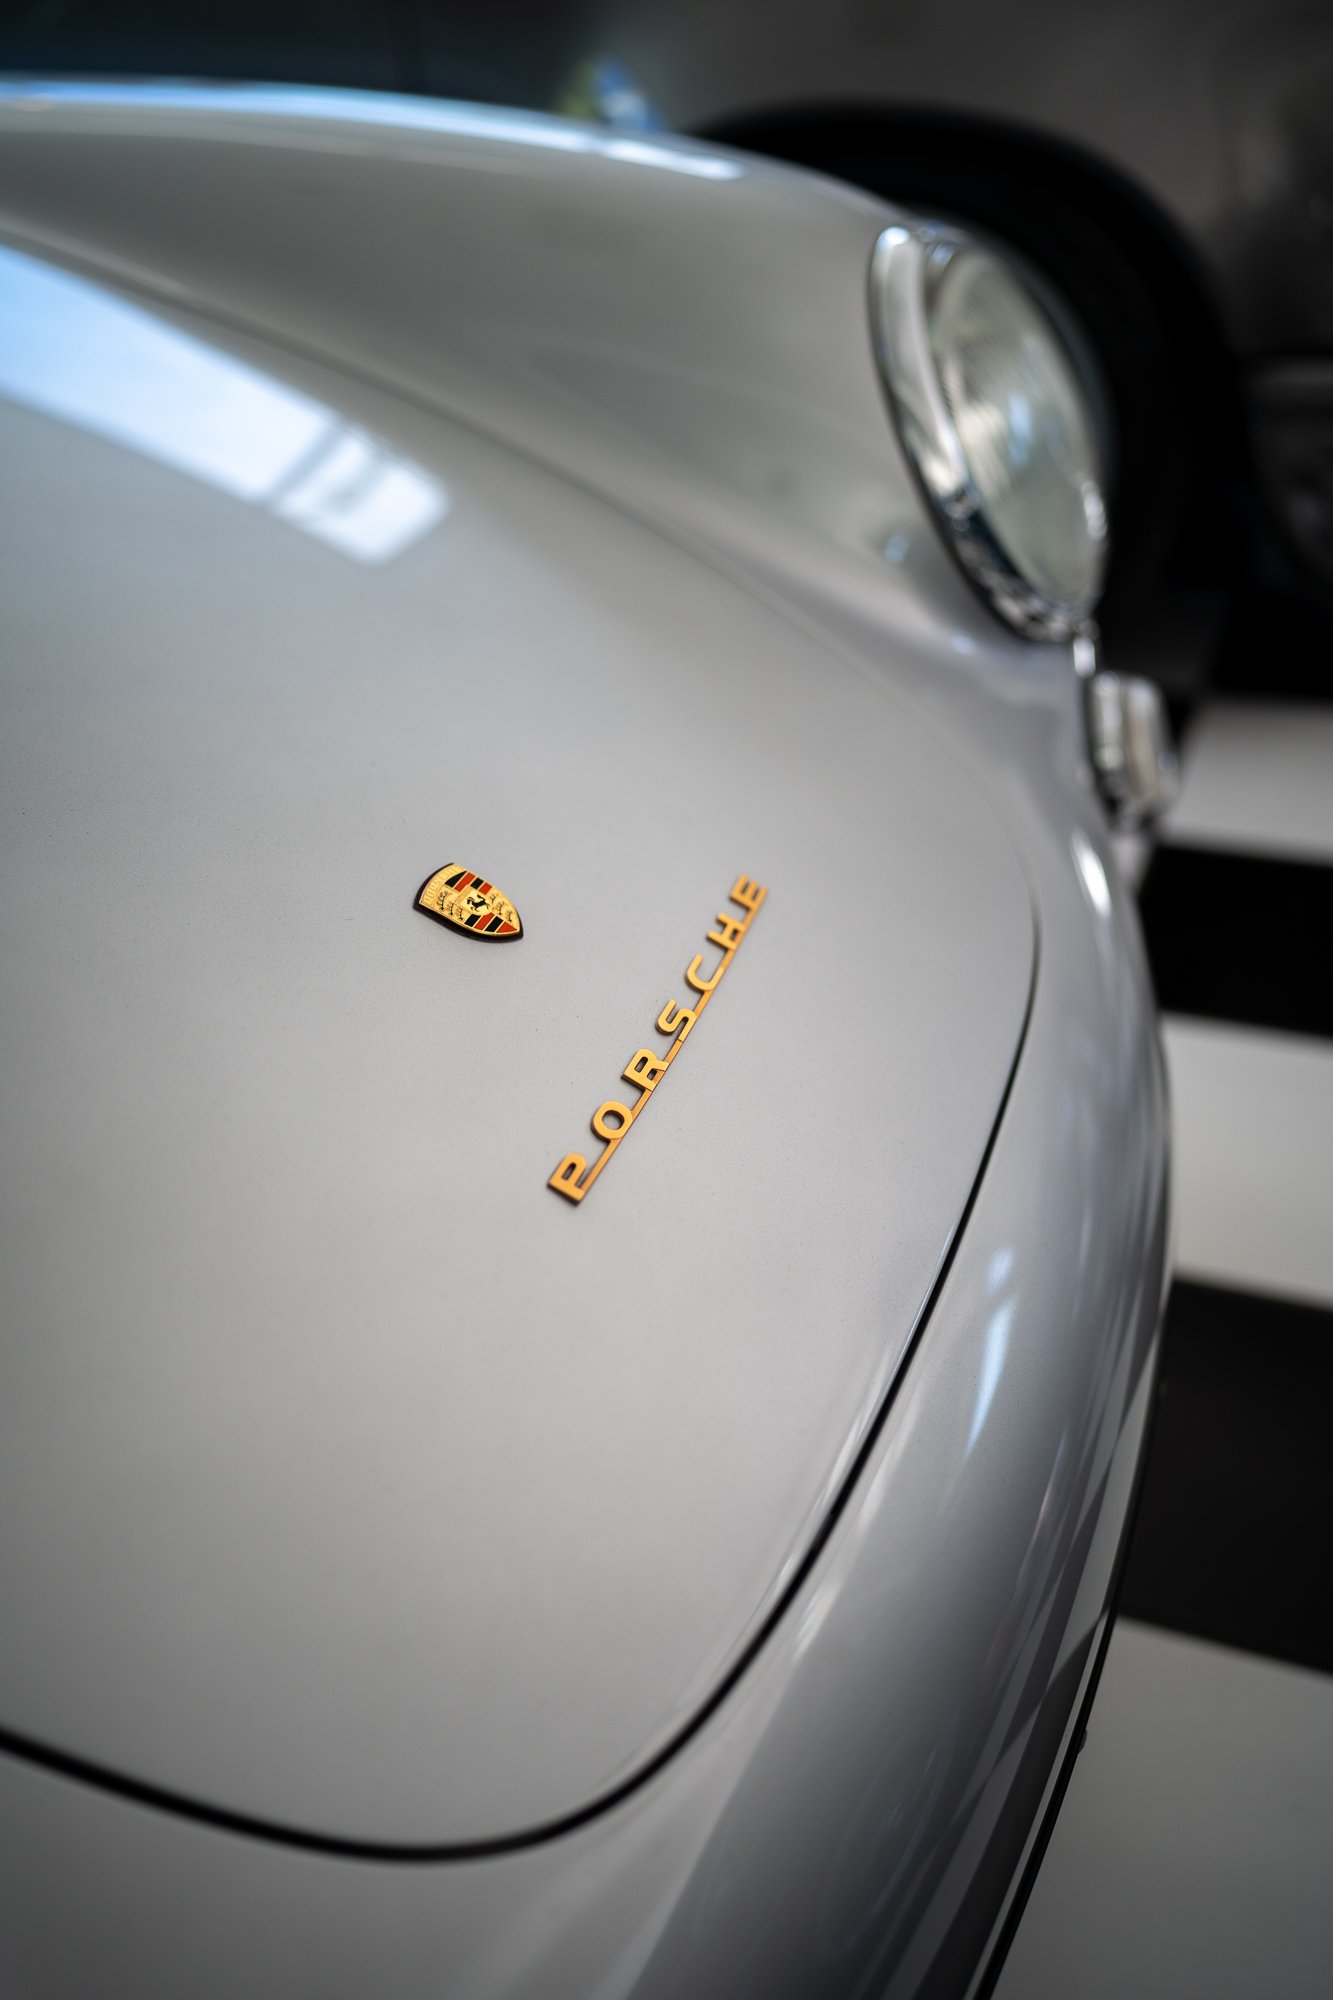 Porsche badge on an original 500 Spyder